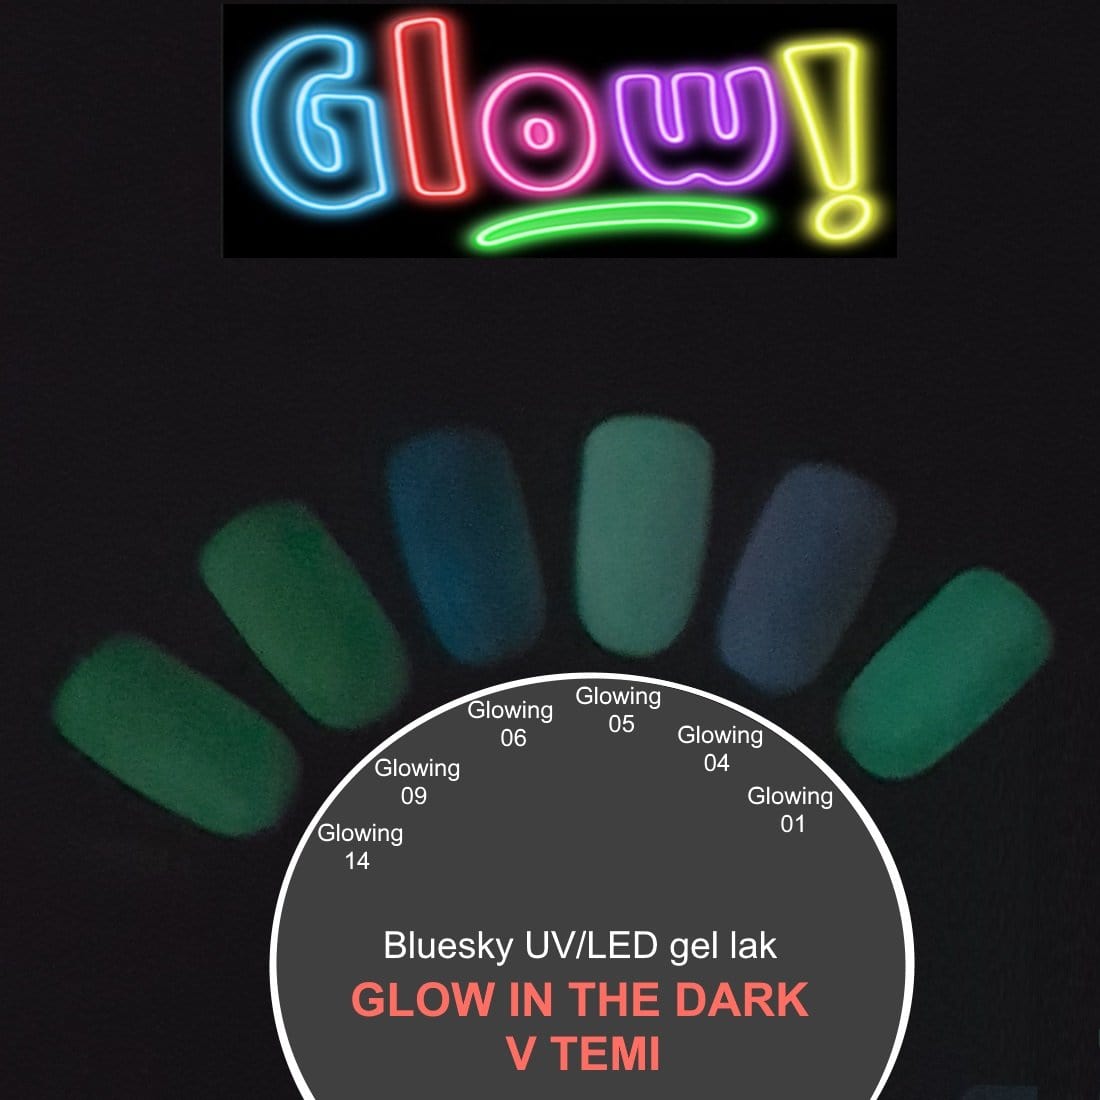 Bluesky UV/LED gel-lak (Glowing 06/ Bel), 10 ml - GLOW IN THE DARK/SE SVETI V TEMI geliranjenohtov